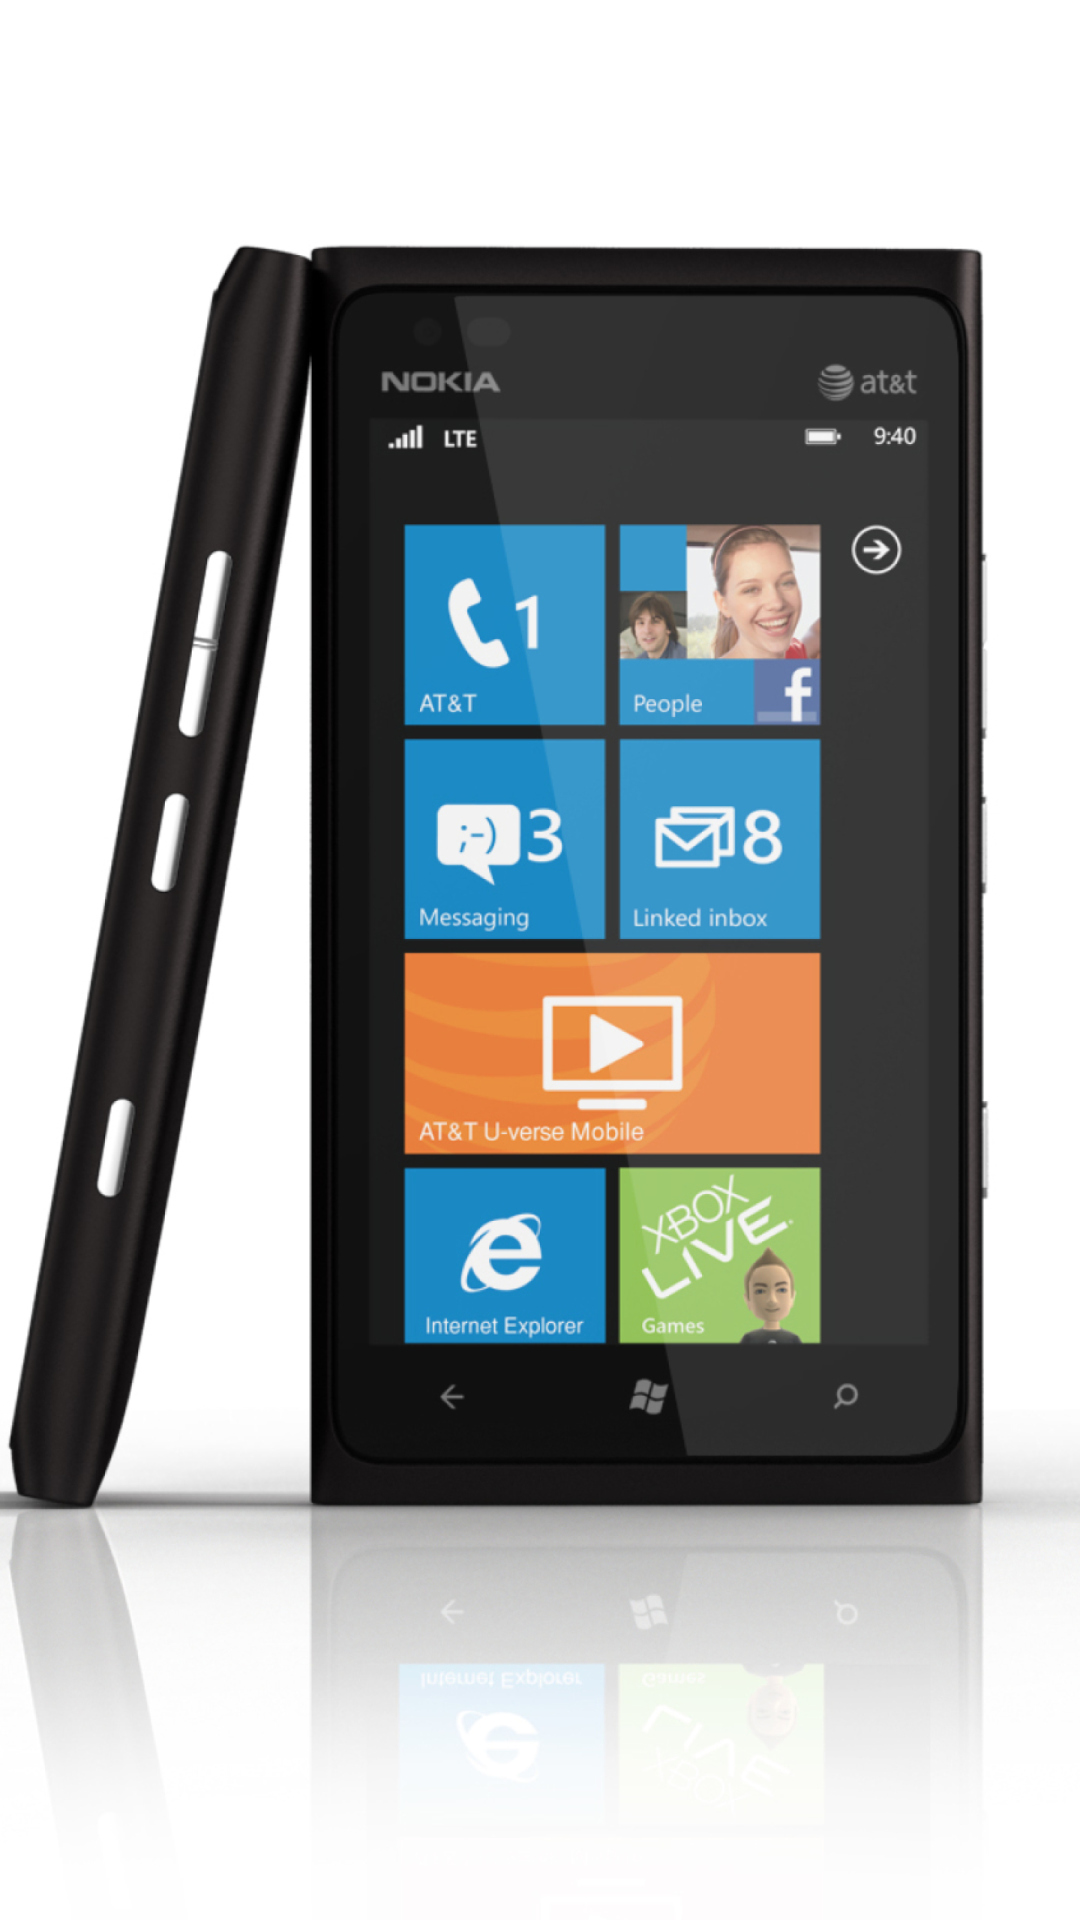 Windows Phone Nokia Lumia 900 wallpaper 1080x1920